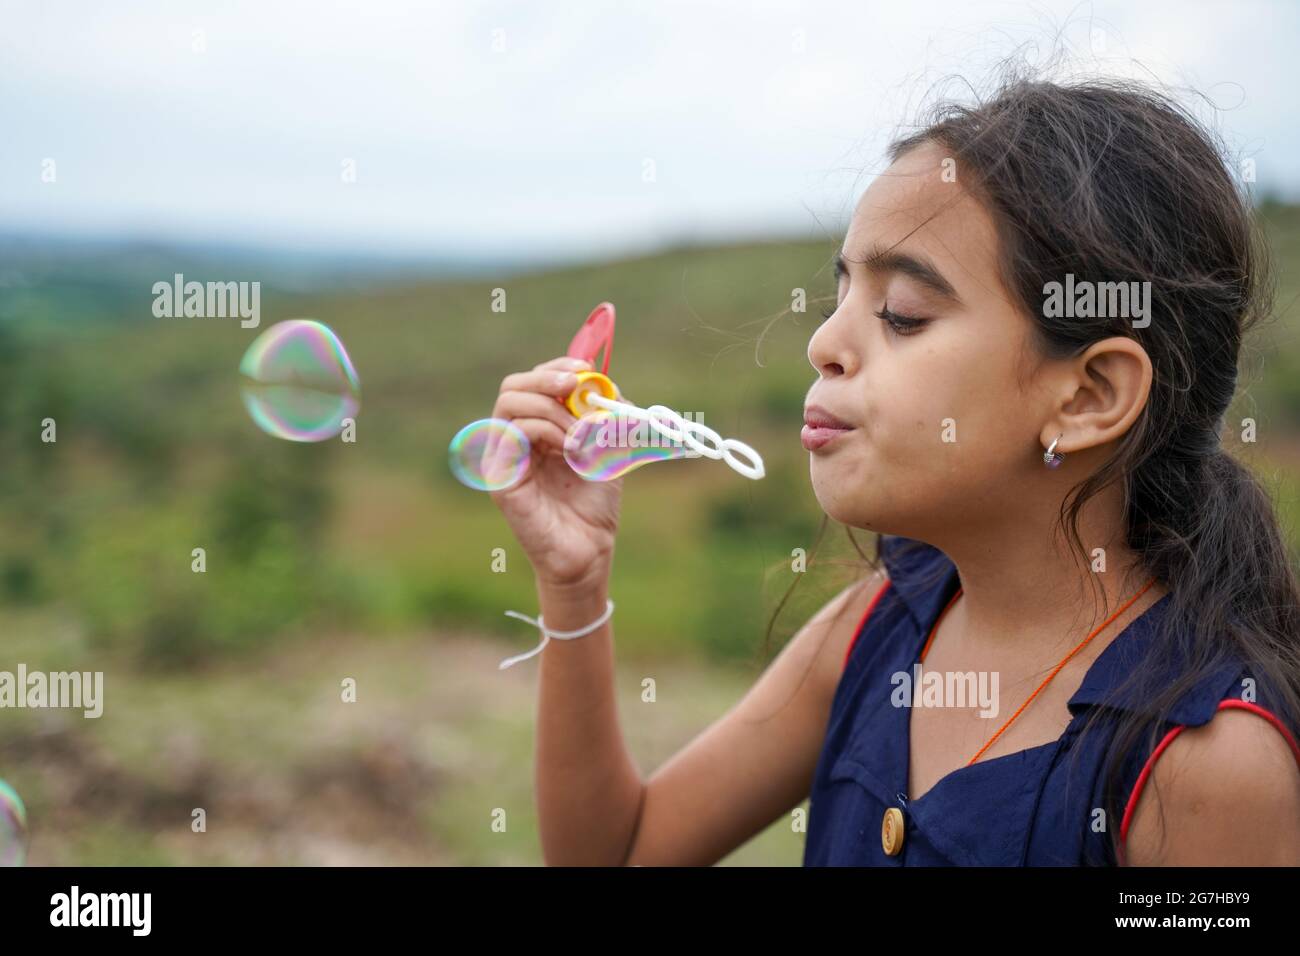 Junge Mädchen Kind spielen durch Seifenblasen Wasserblasen - conept von spielerischen chidlren während Urlaub. Stockfoto